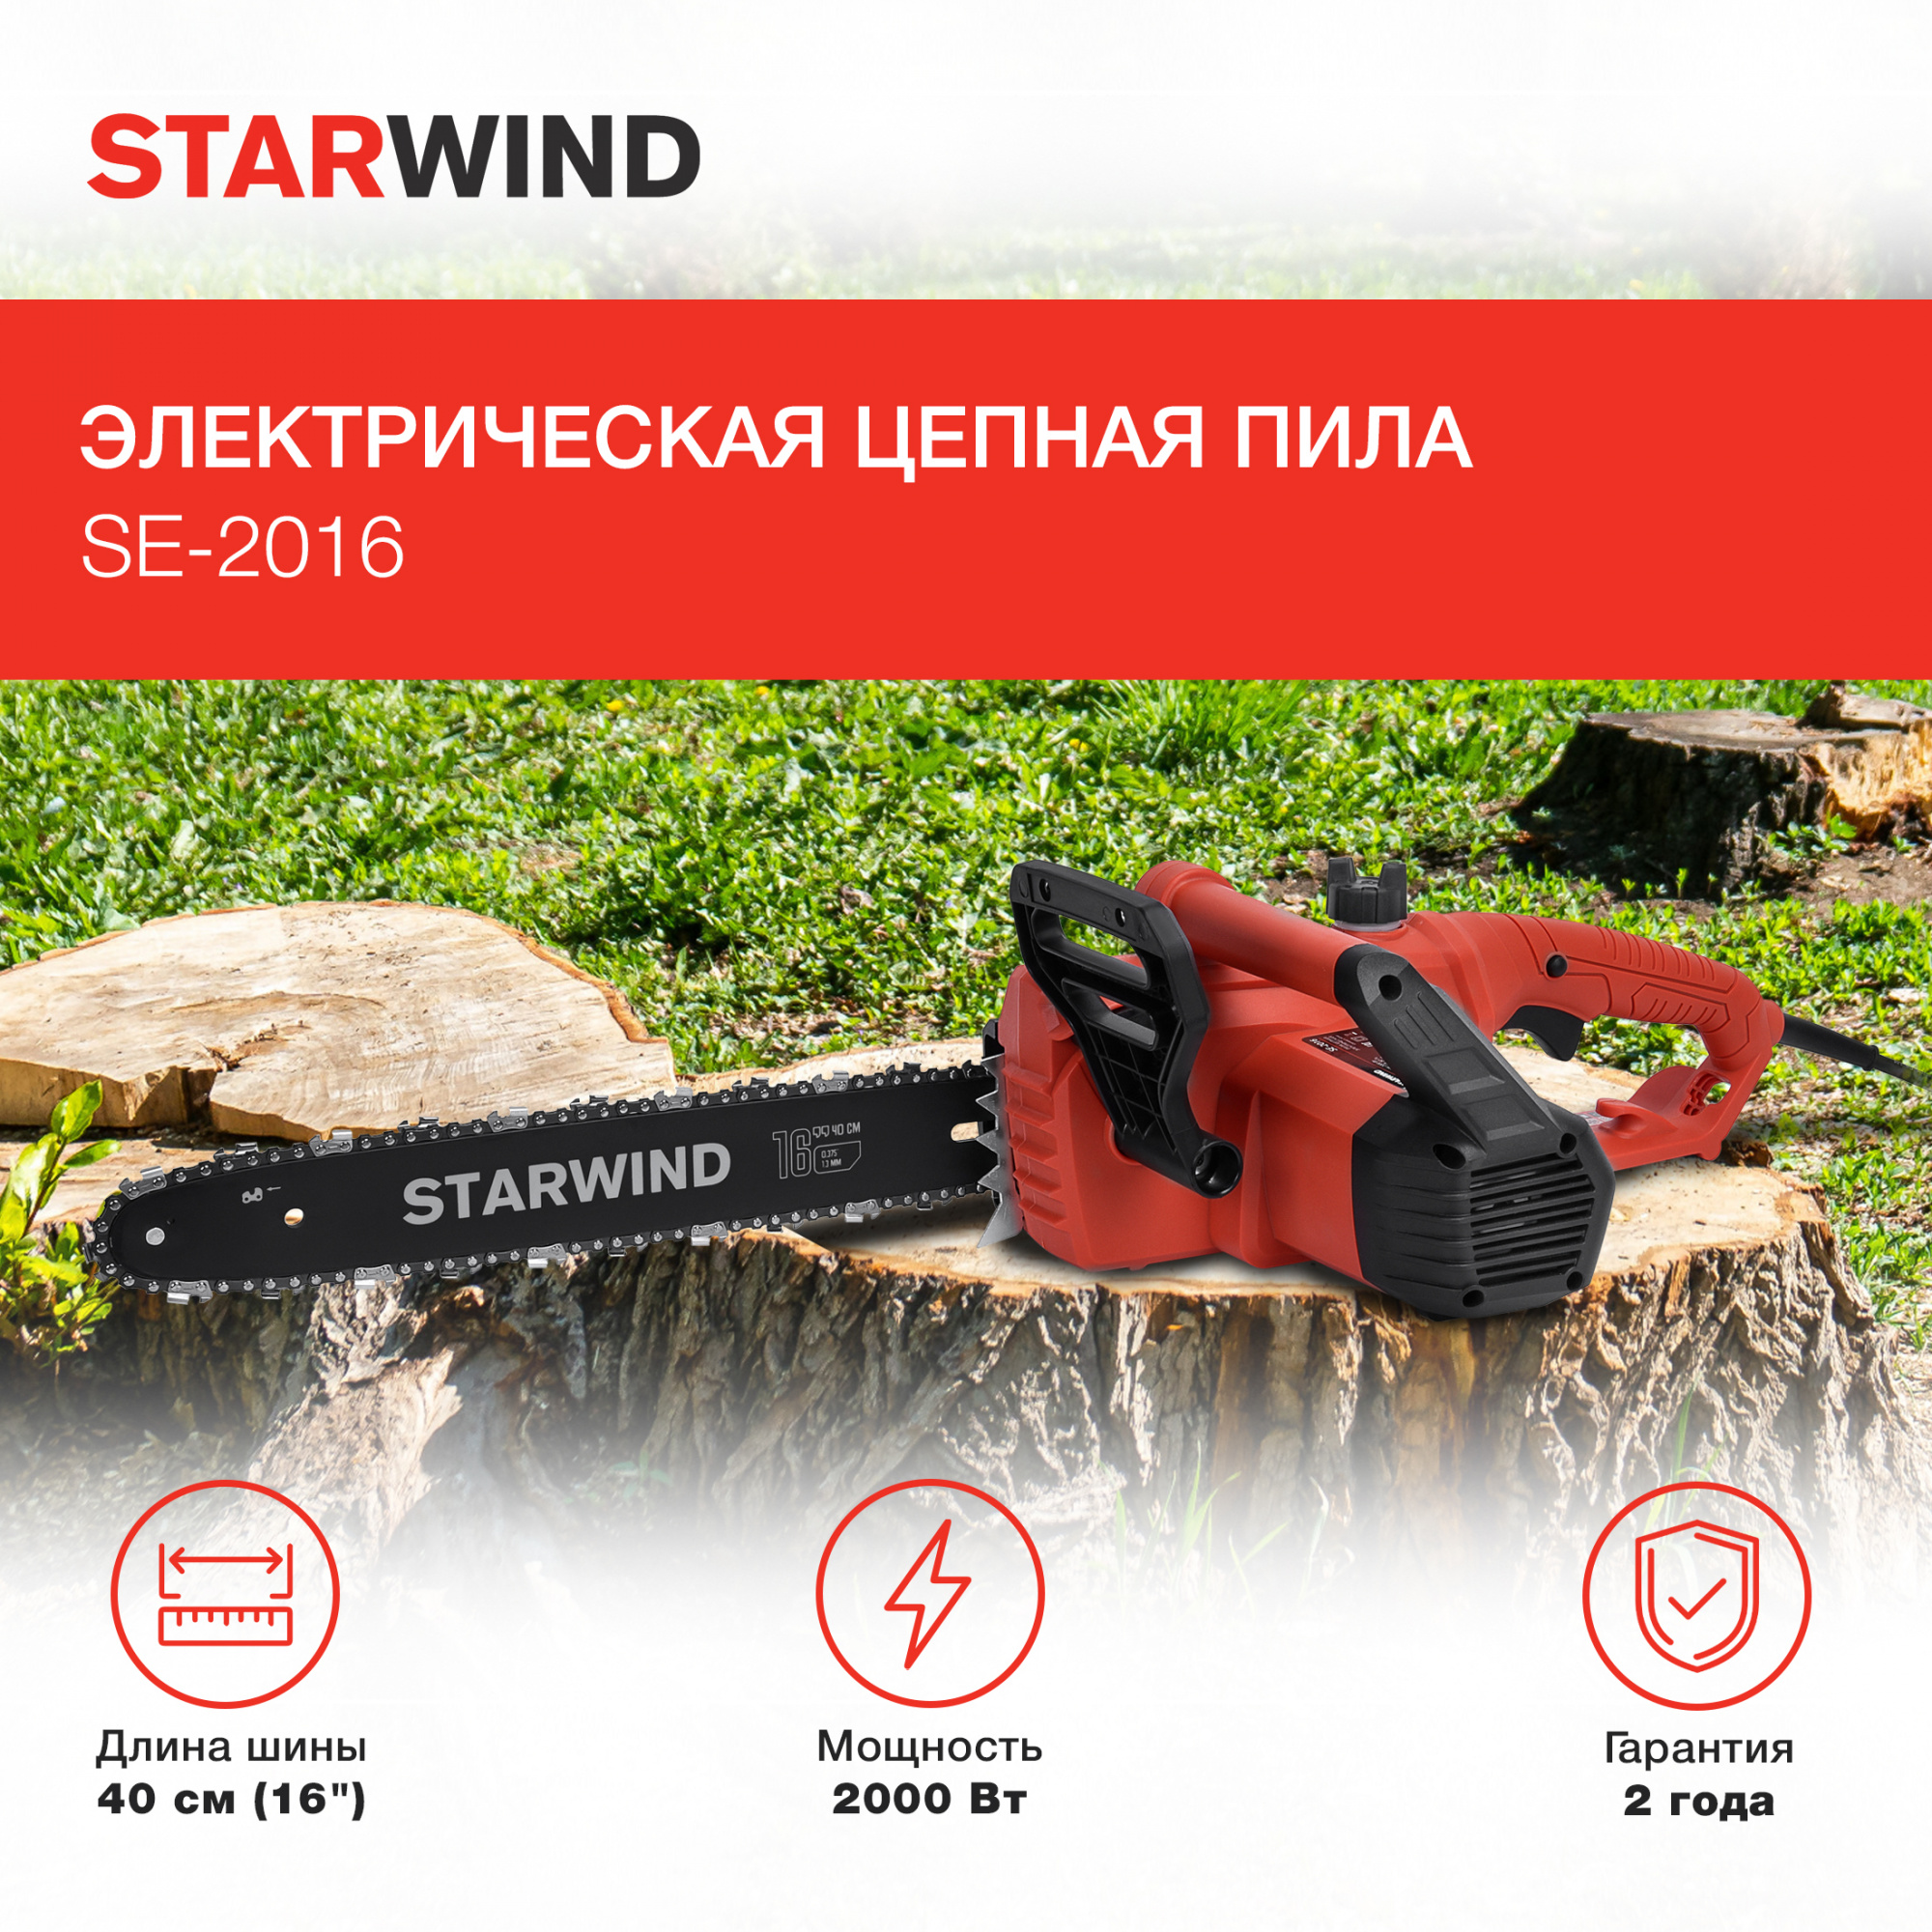 Электрическая цепная пила Starwind SE-2016 2000Вт 1л.с. дл.шины:16" (40cm)